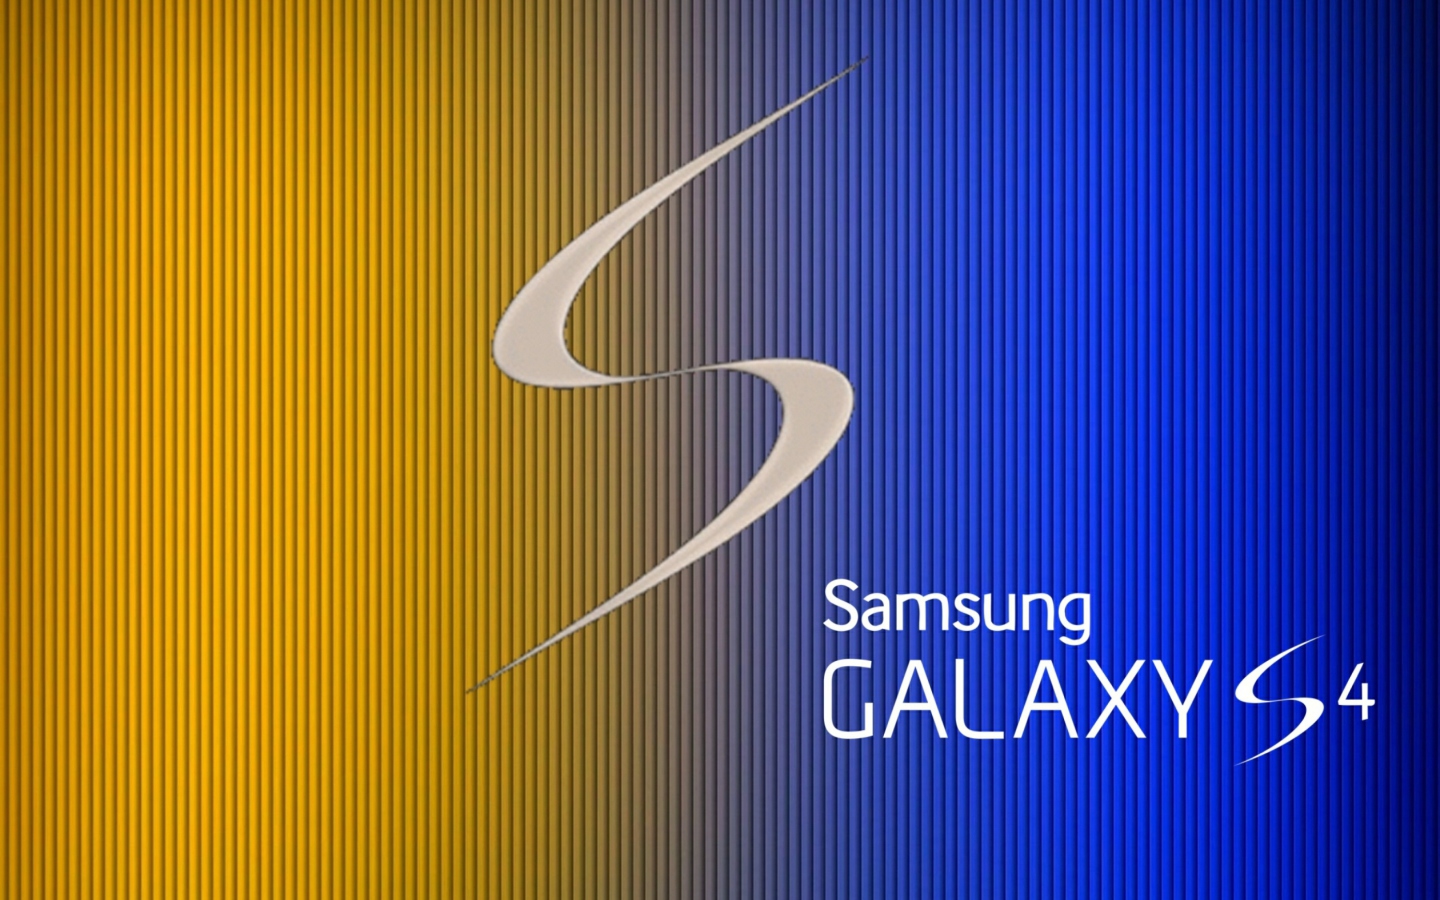 S Galaxy S4 wallpaper 1440x900